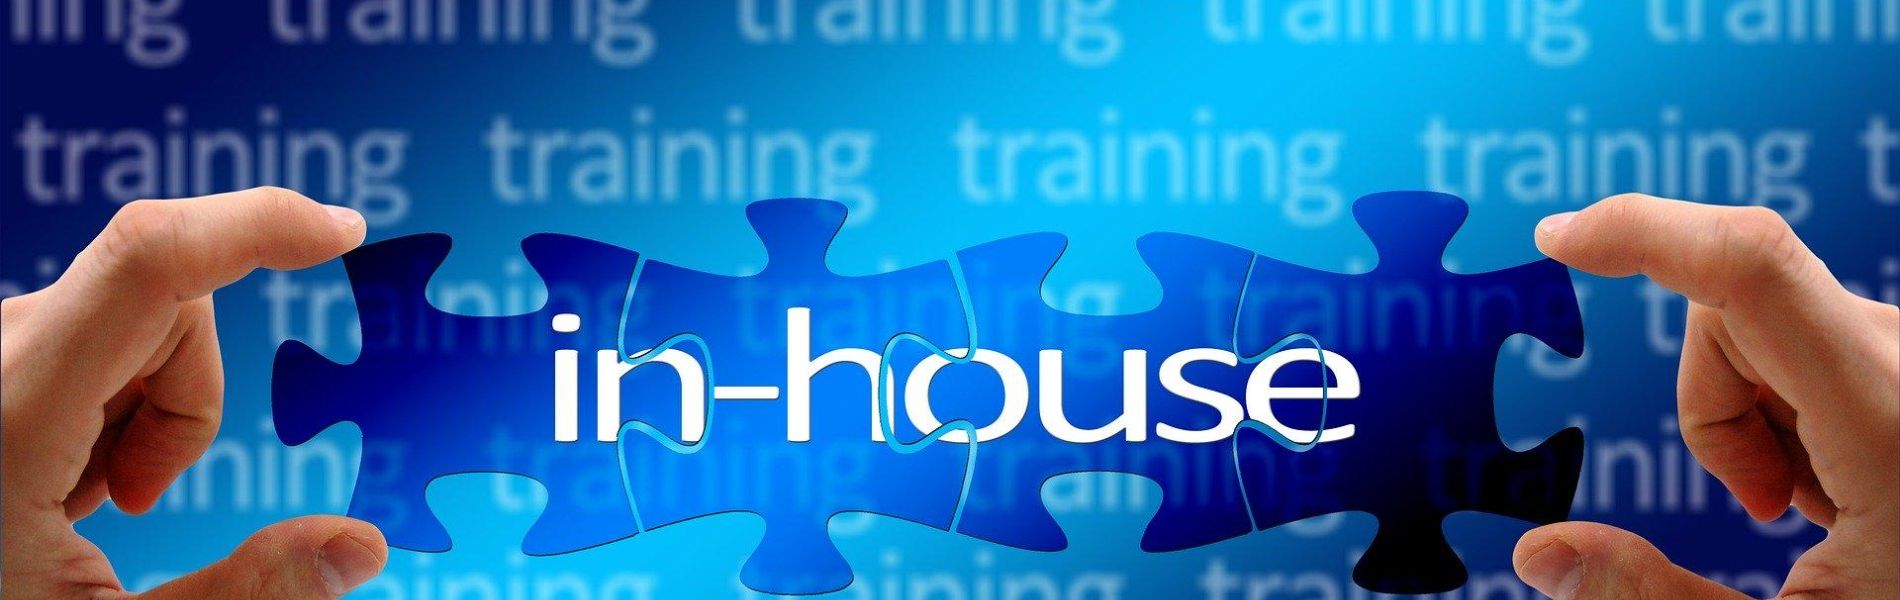 Inhouse-Training